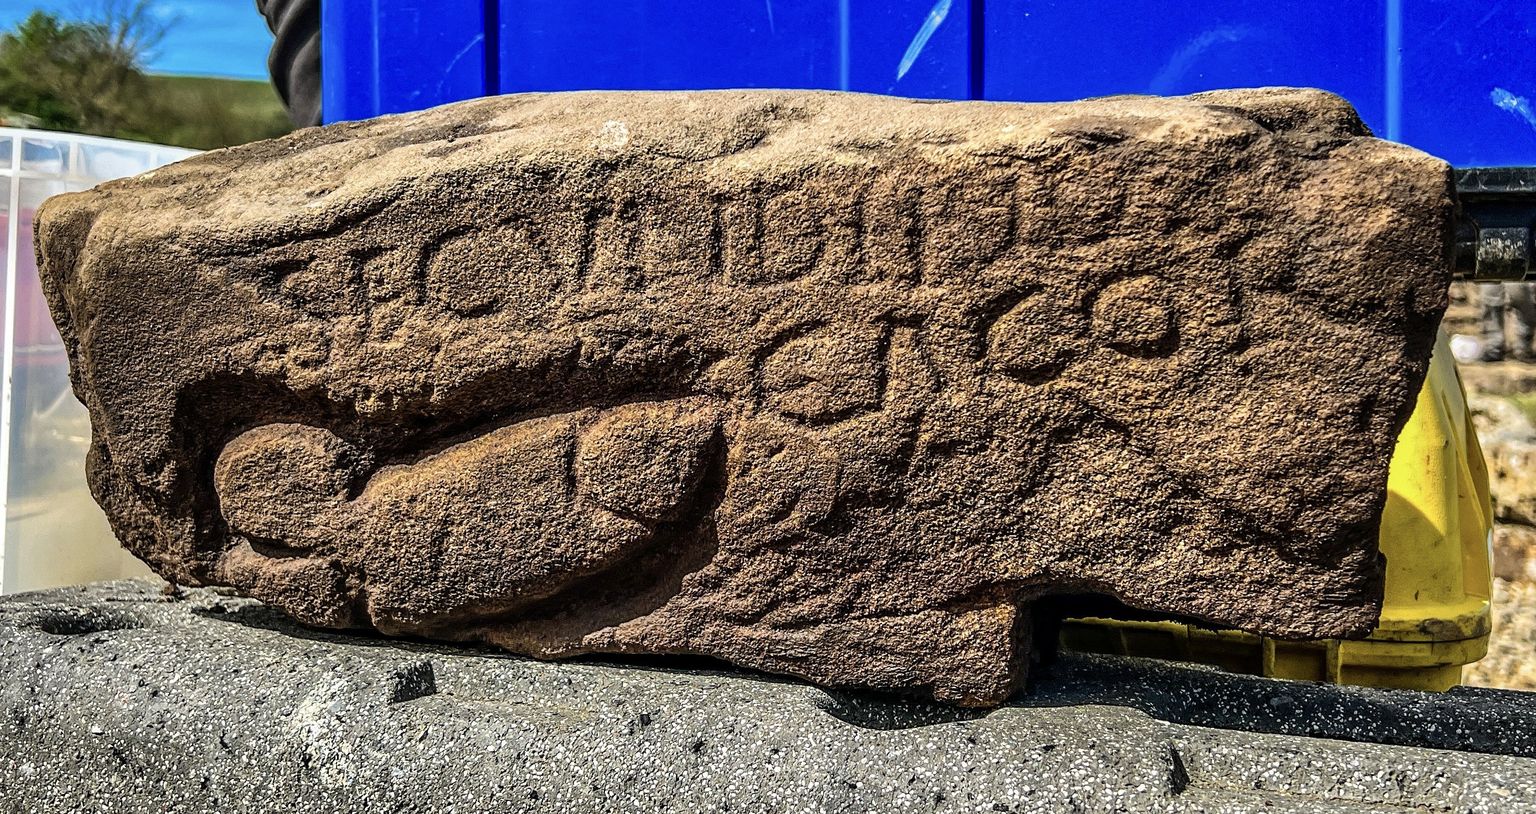 Briti arheoloogid leidsid Põhja-Inglismaal Hadrianuse valli juurest kunagisest Vana-Rooma kindlusest kivile raiutud solvangu, mis koosneb fallosest ja lausest